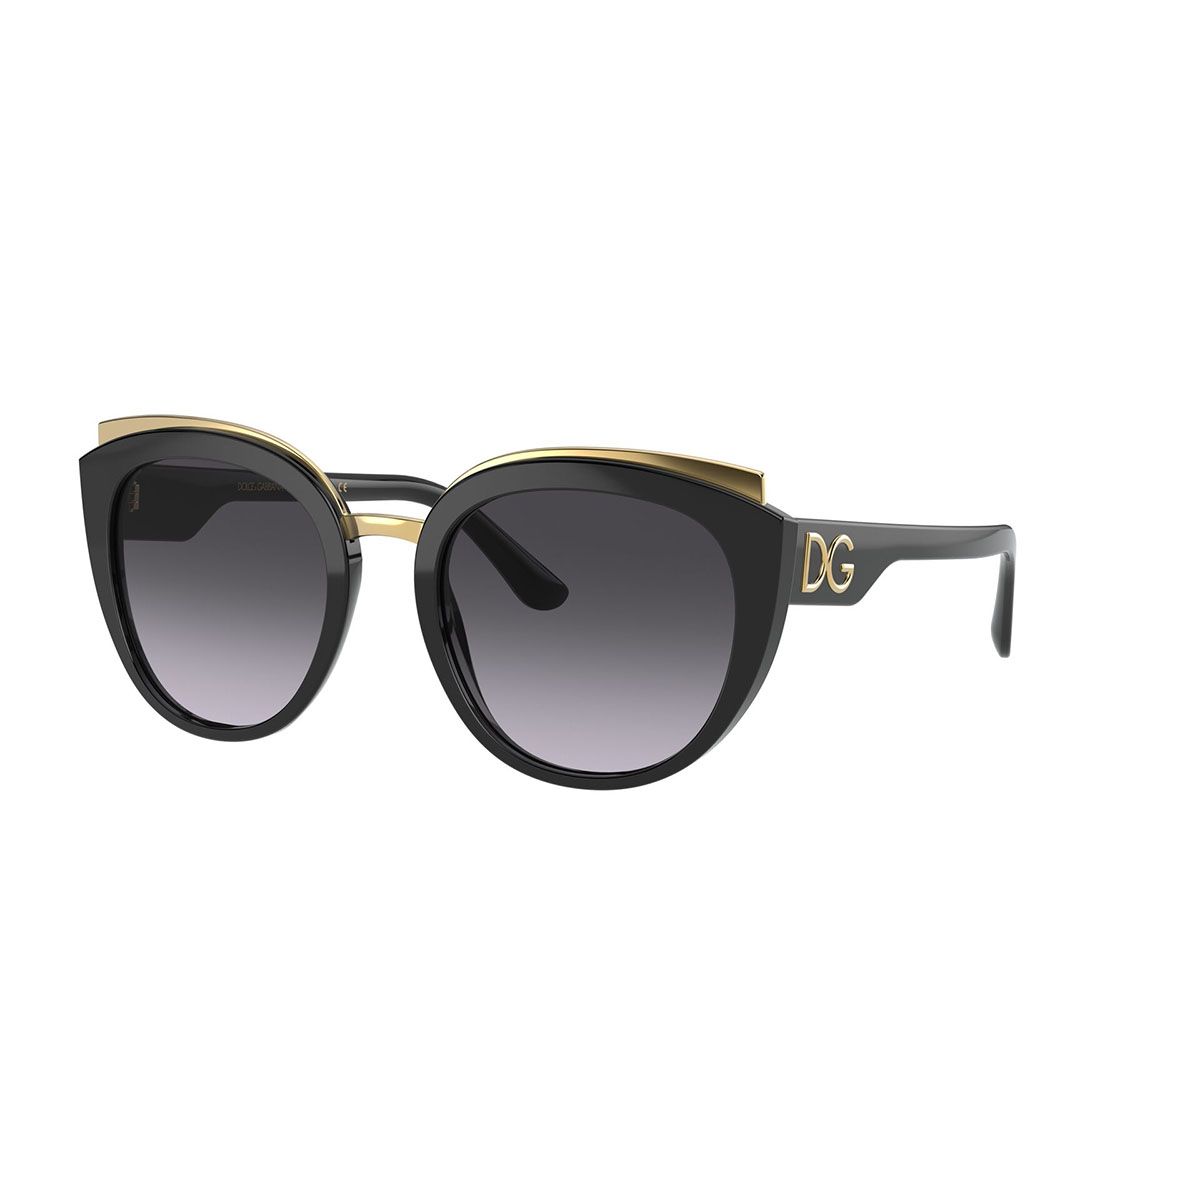 DG4383 Pillow Sunglasses 501 8G - size 54